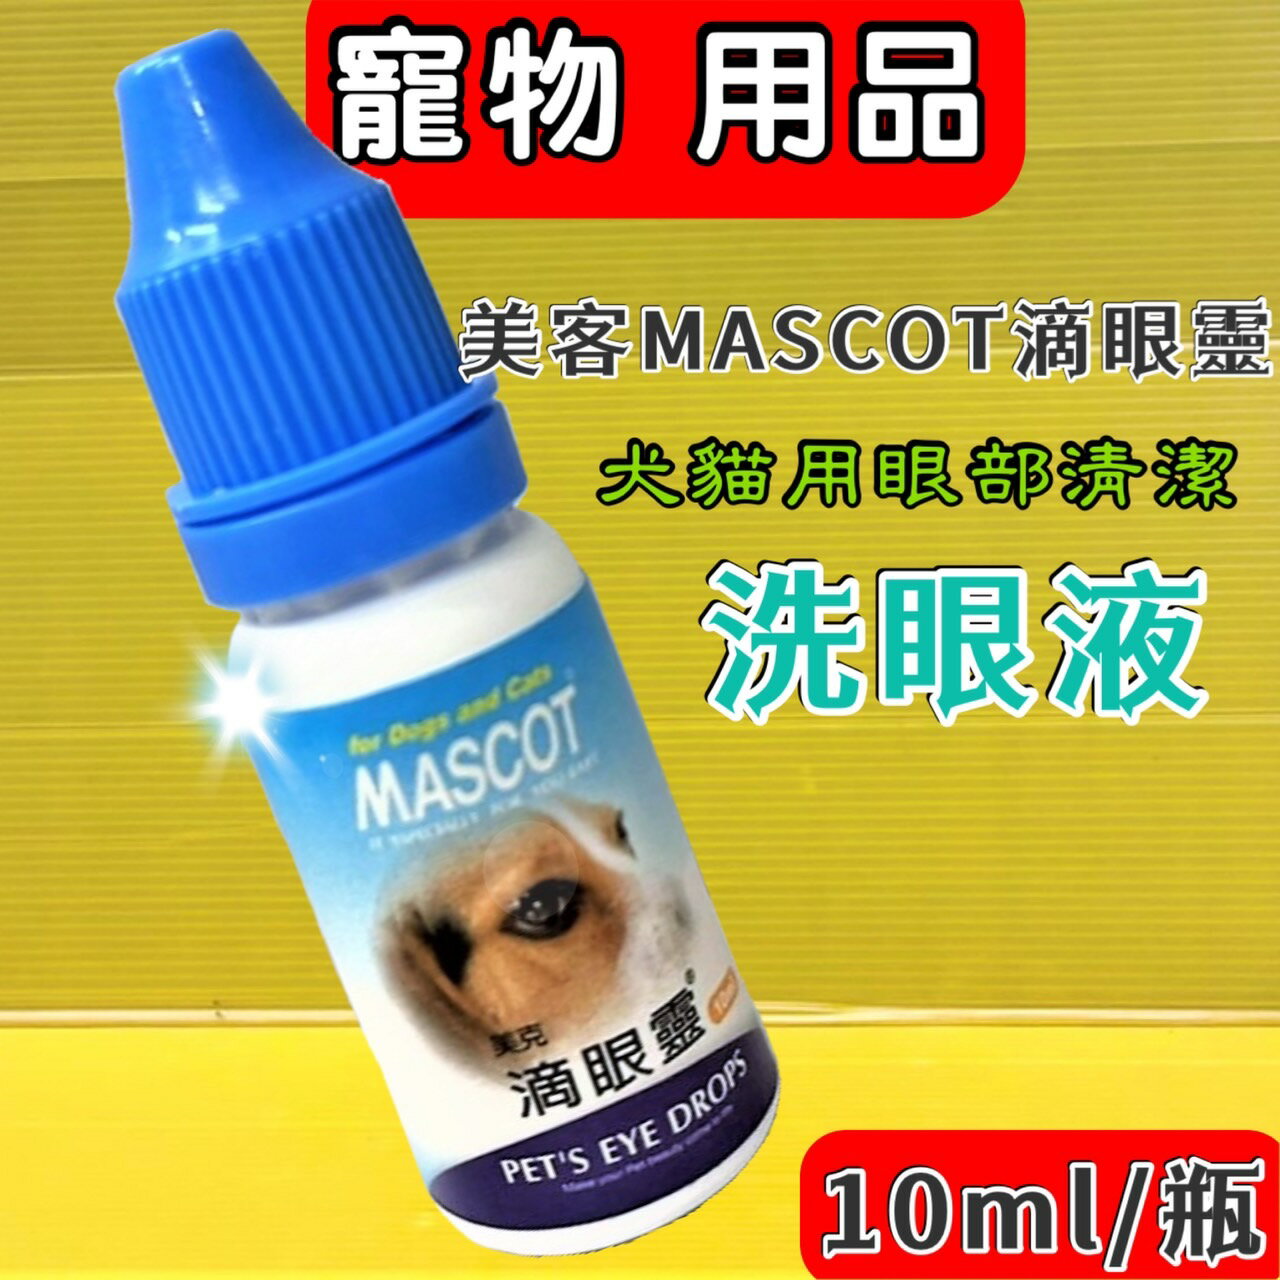 ✪四寶的店✪ 附發票~美克 MASCOT 犬貓專用滴眼靈 (寵物美容師 國家考試洗澡前後 必備品) 10ml/瓶